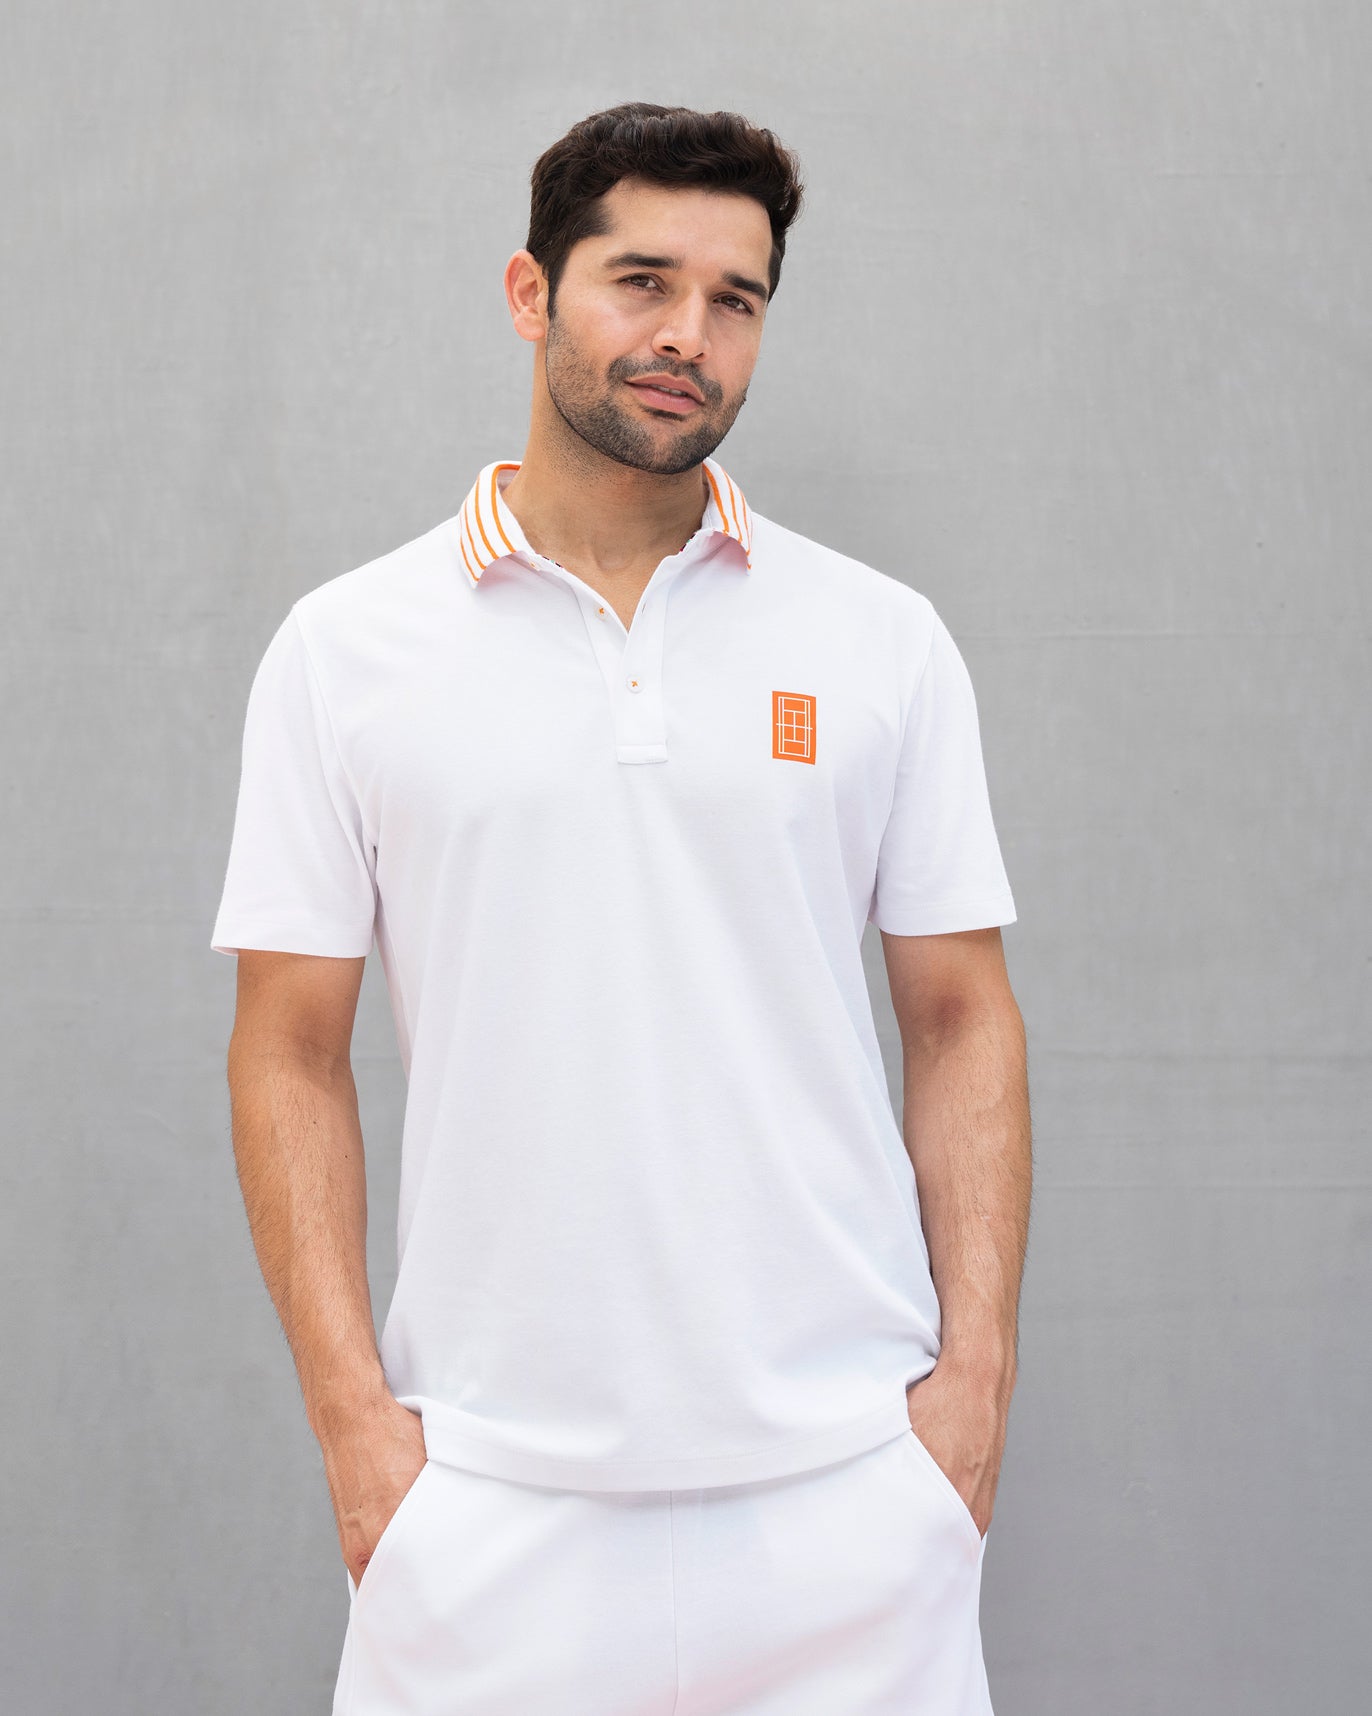 Nico Tennis Polo T-shirt - White & Orange